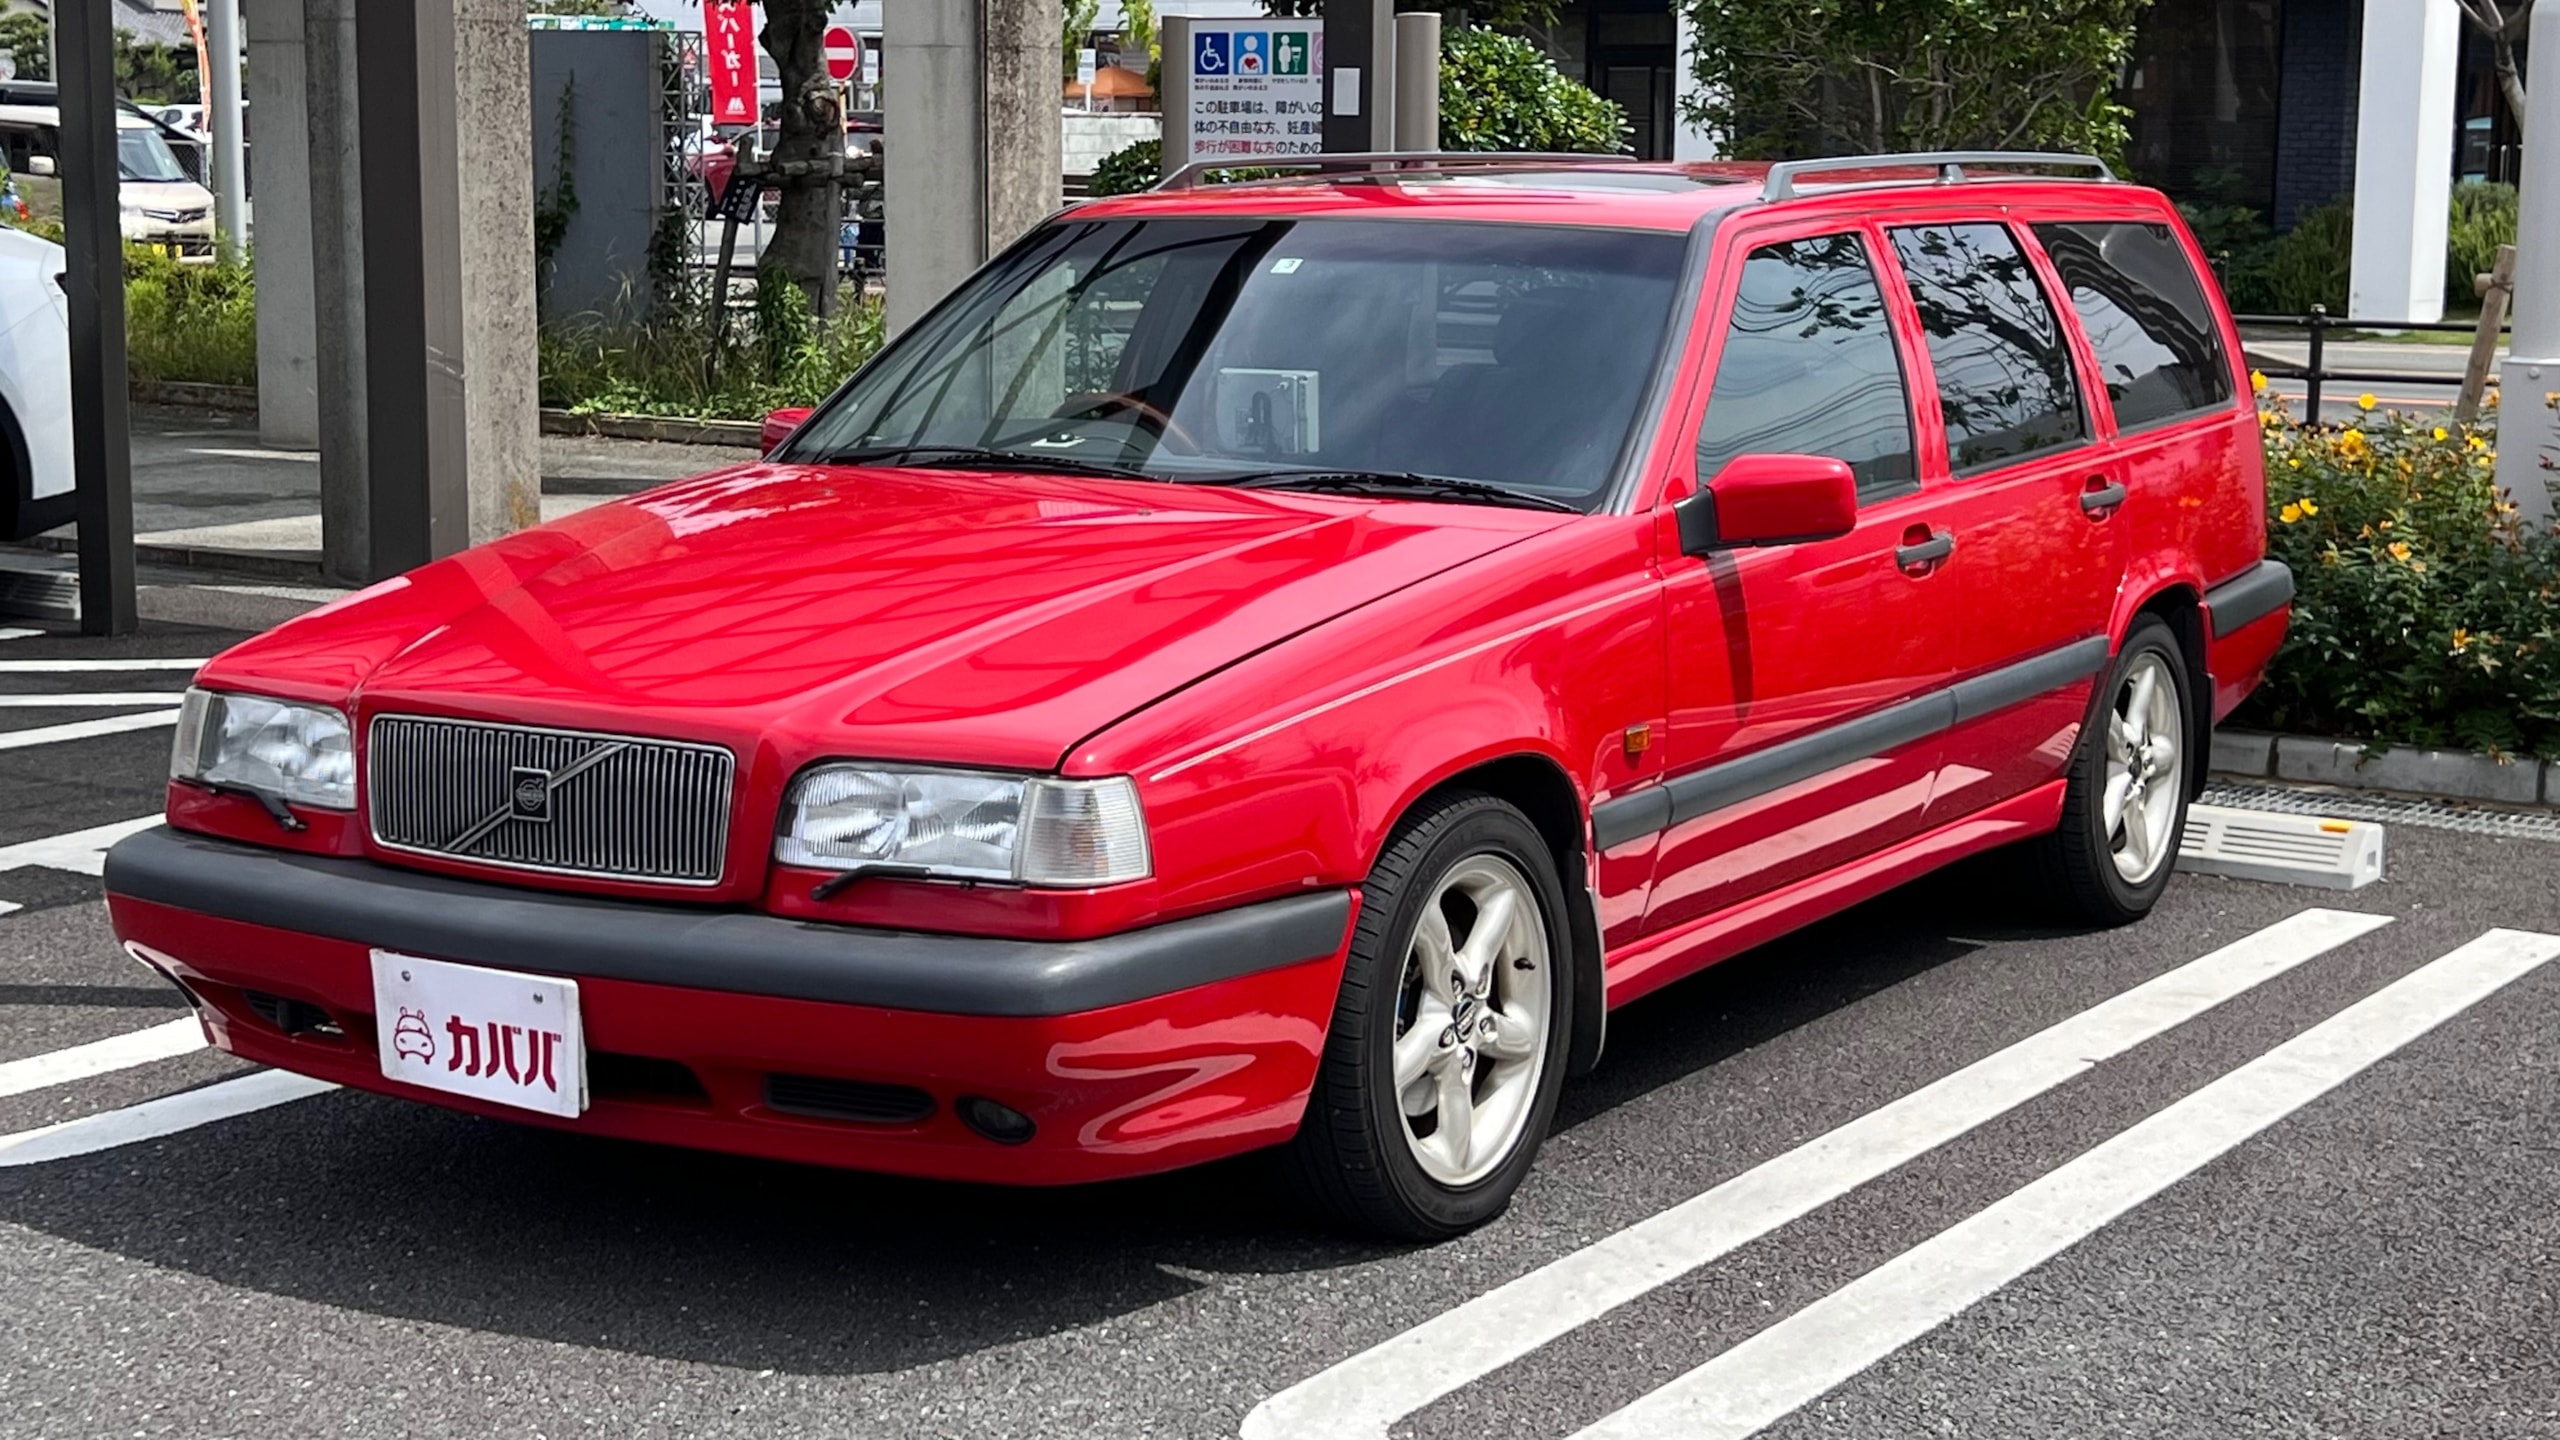 850エステート 2.5 20V(ボルボ)1997年式 38万円の中古車 - 自動車